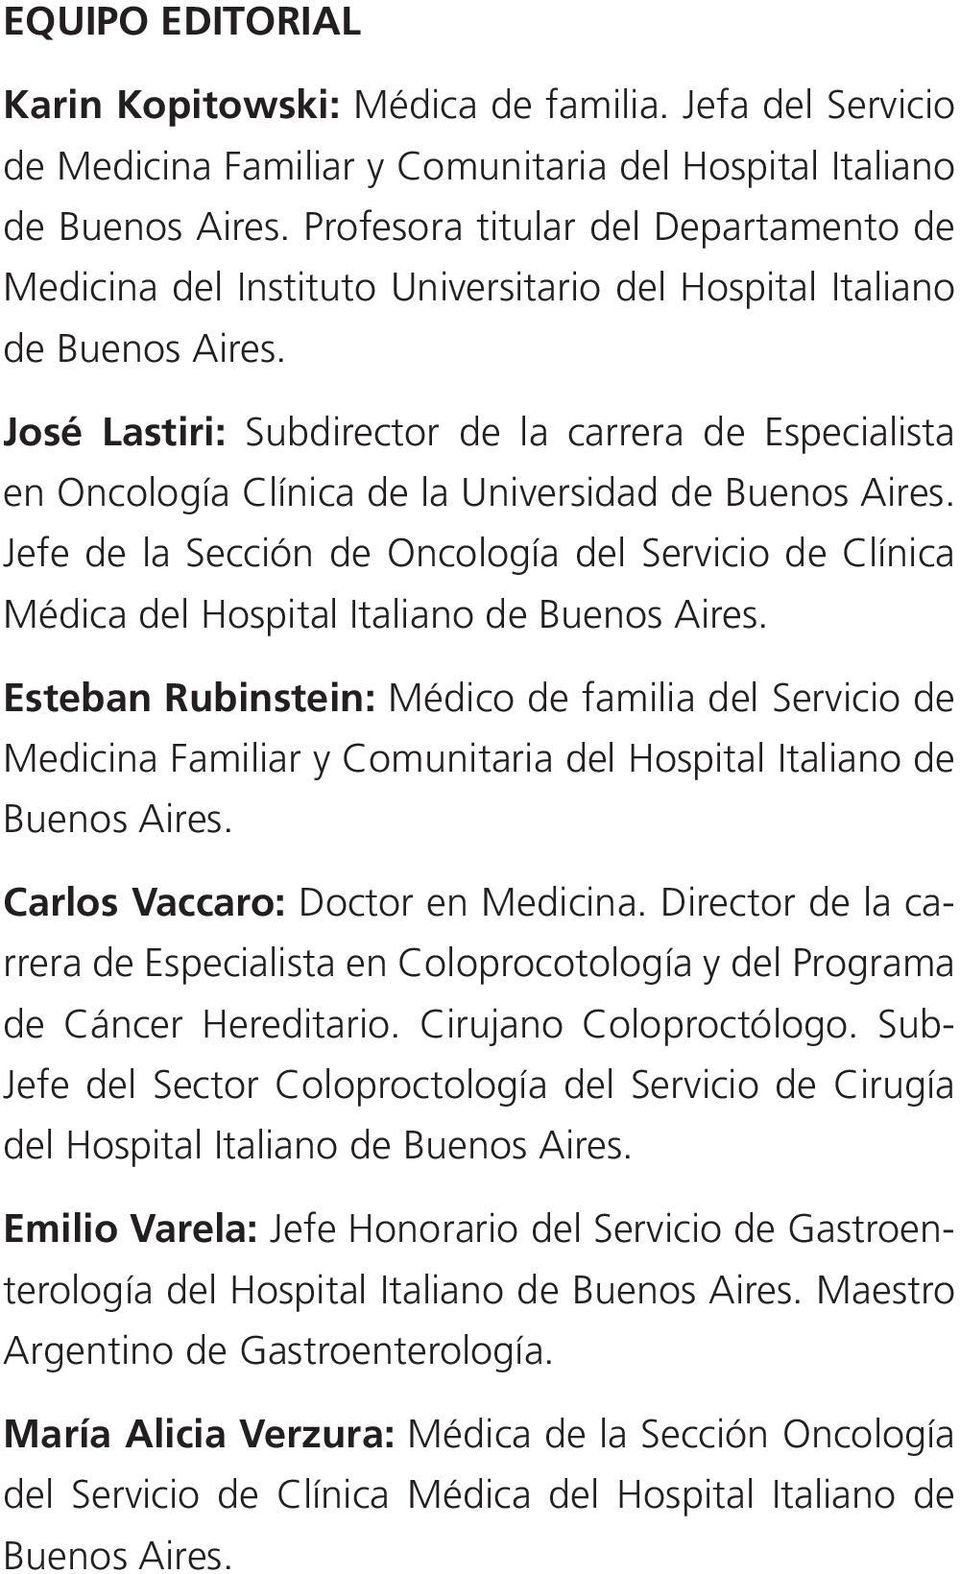 José Lastiri: Subdirector de la carrera de Especialista en Oncología Clínica de la Universidad de Buenos Aires.